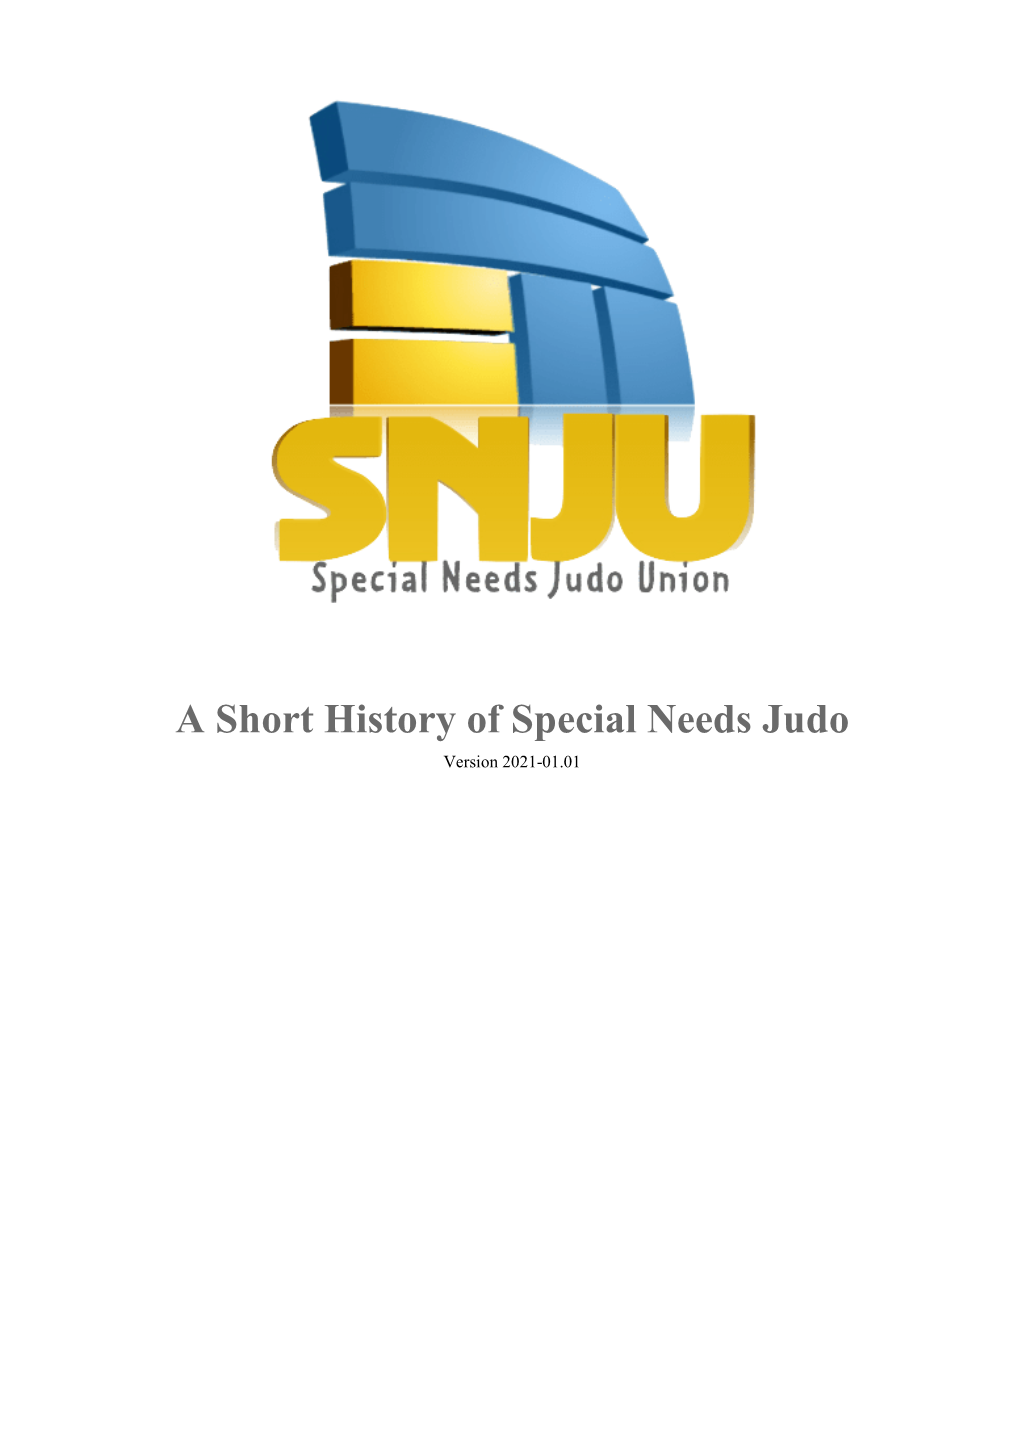 A Short History of SN-Judo